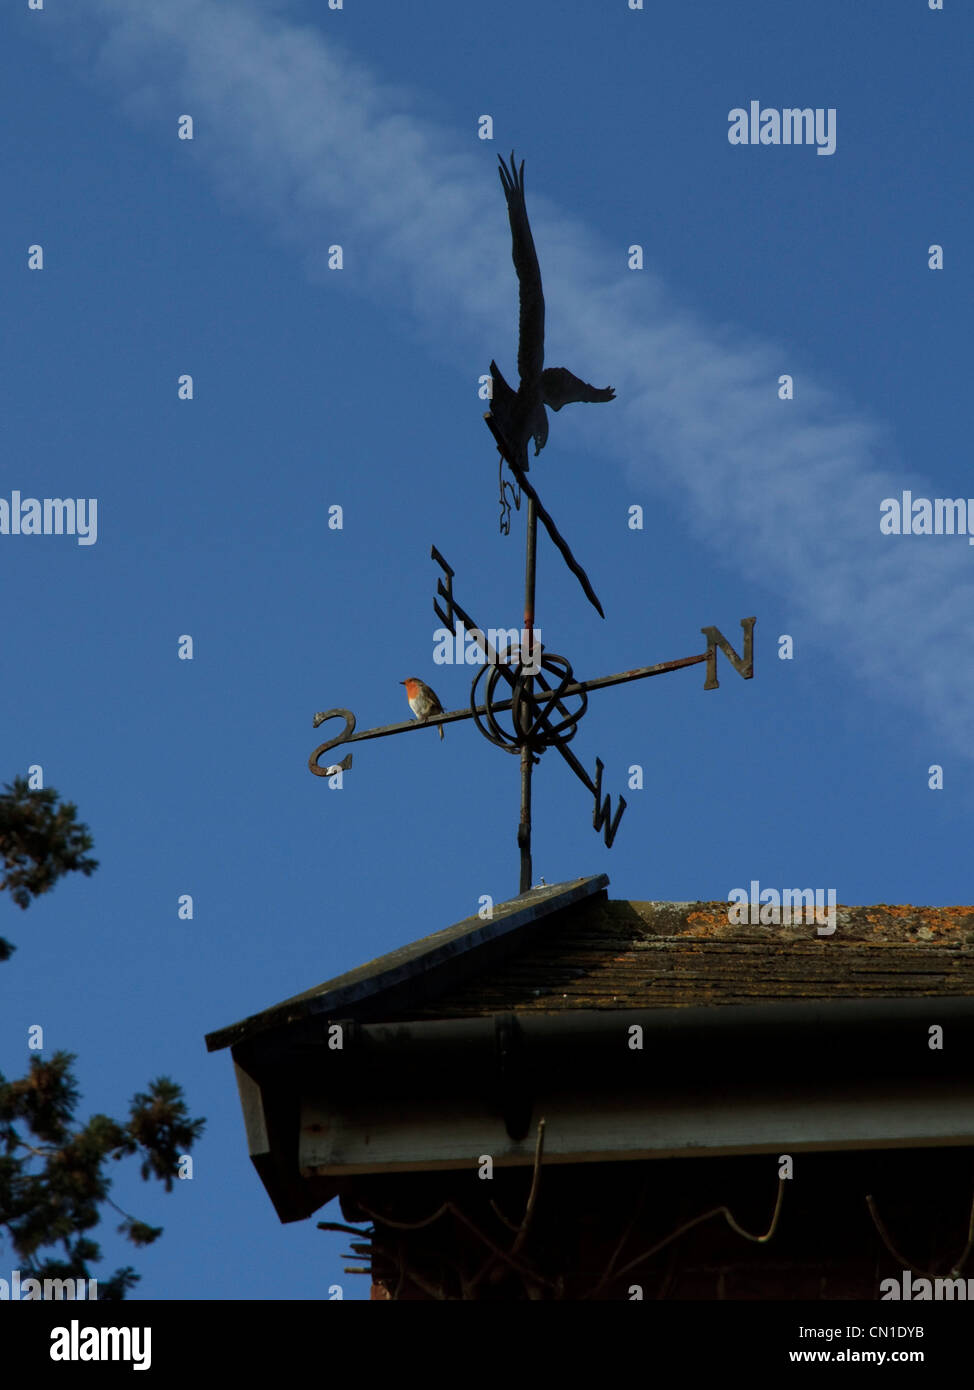 Un merle s'assied sur une girouette against a blue sky Banque D'Images